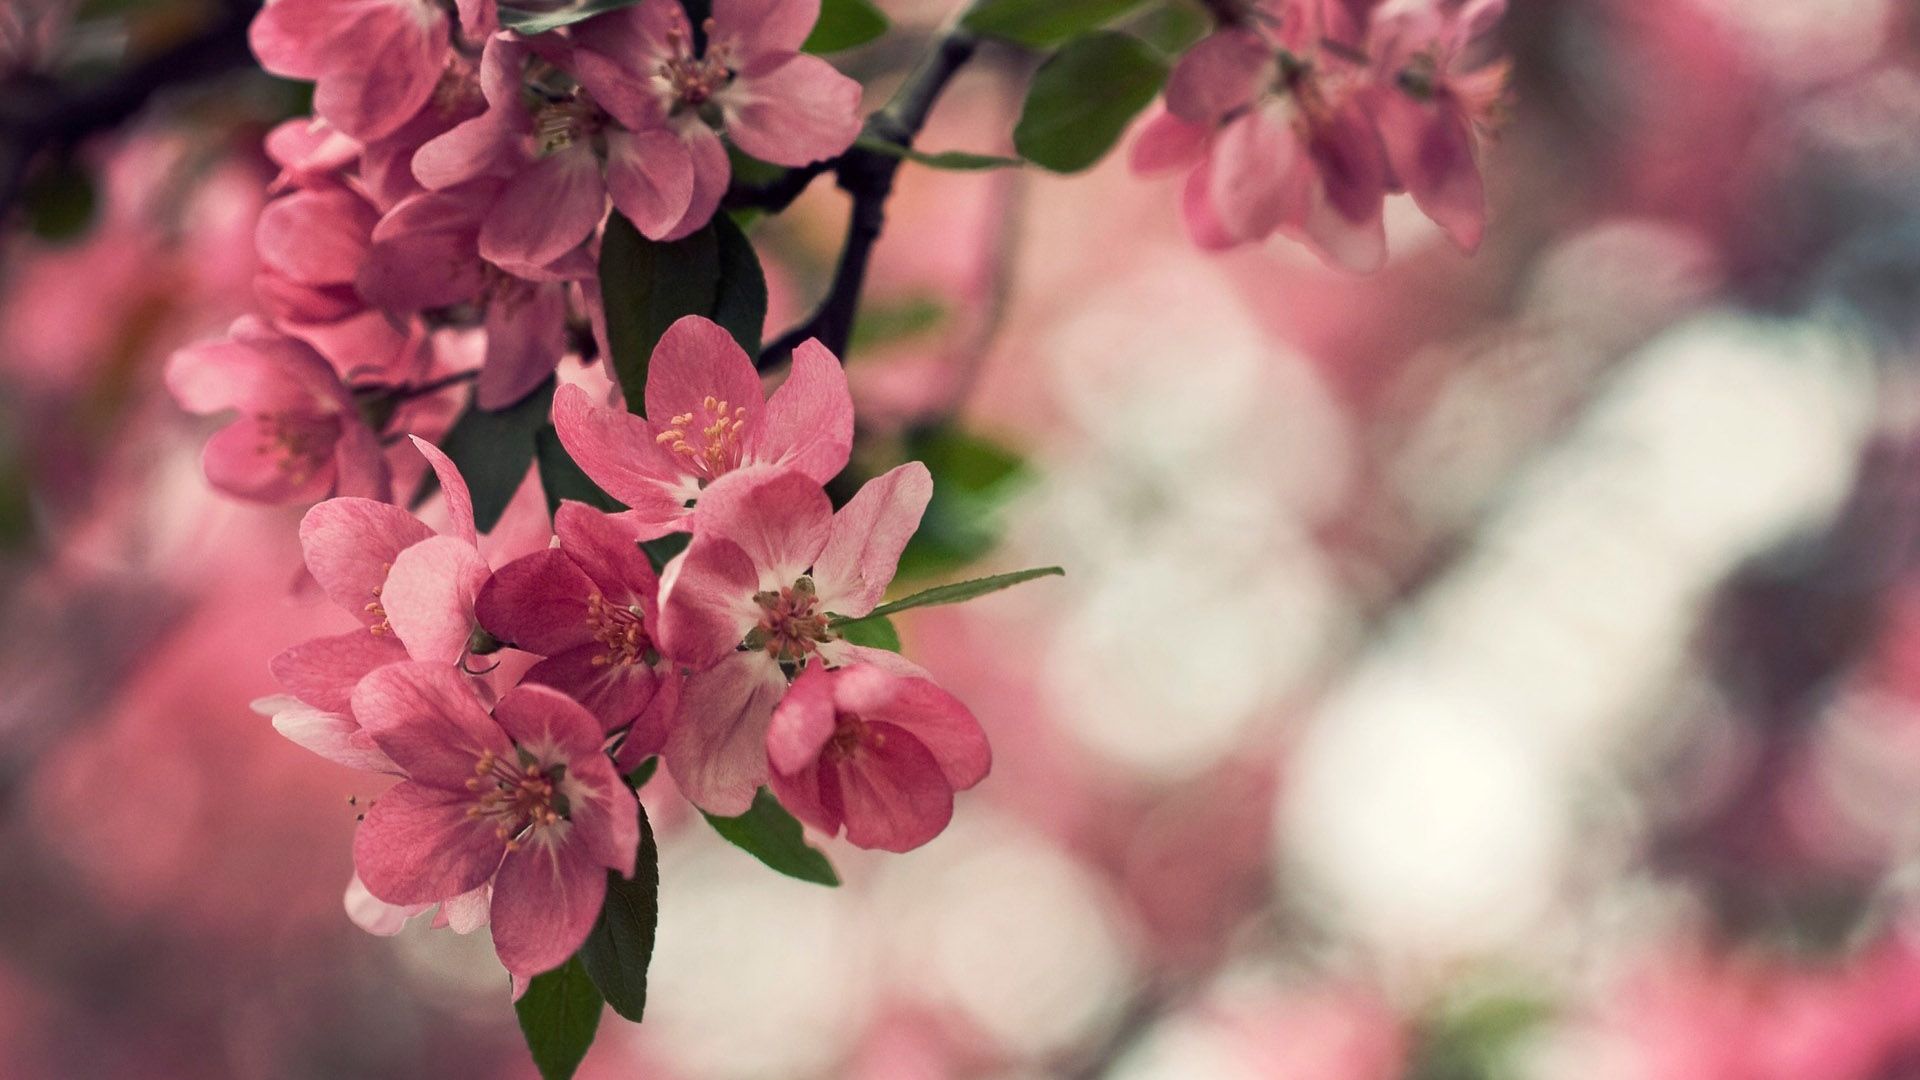 والپیپر فوق العاده قشنگ از شکوفه های درخت هلو 